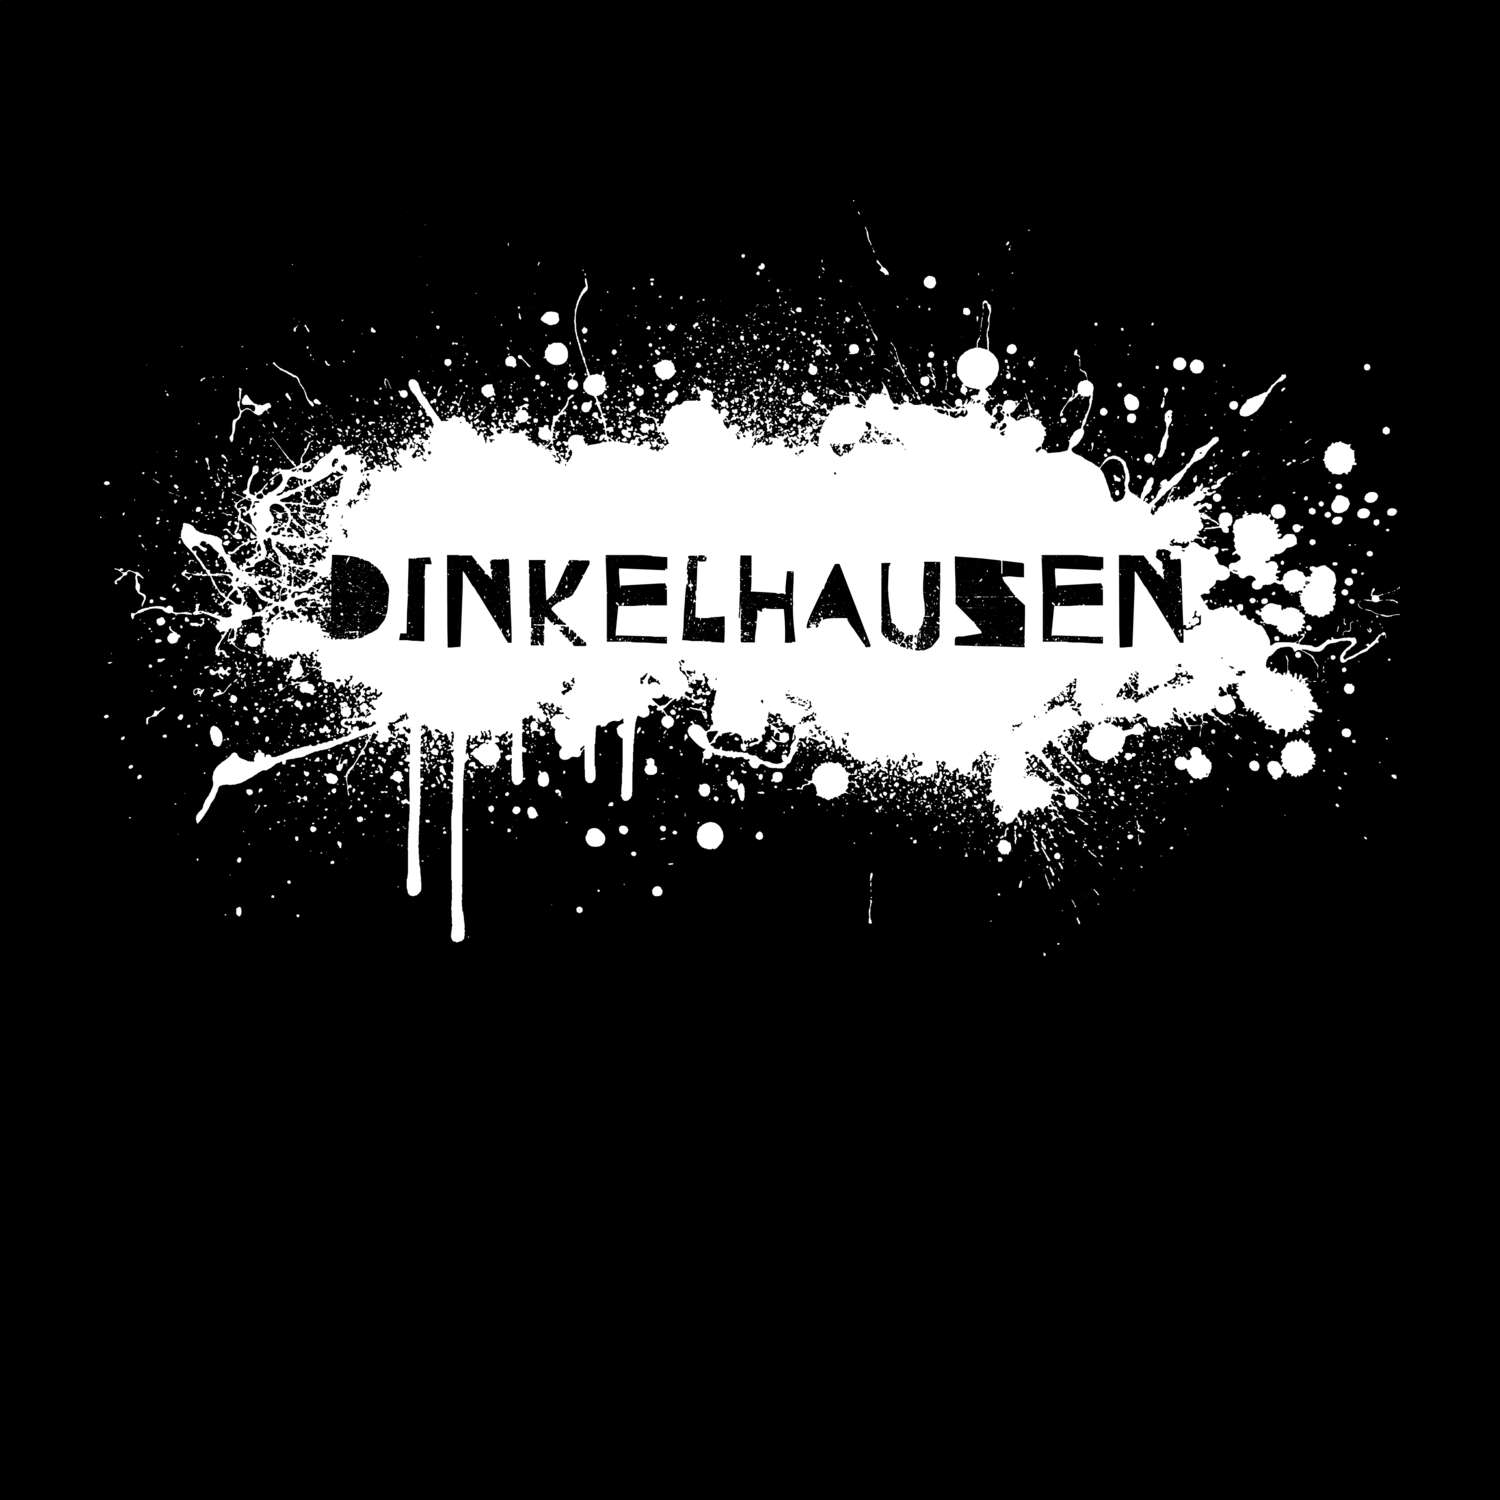 Dinkelhausen T-Shirt »Paint Splash Punk«